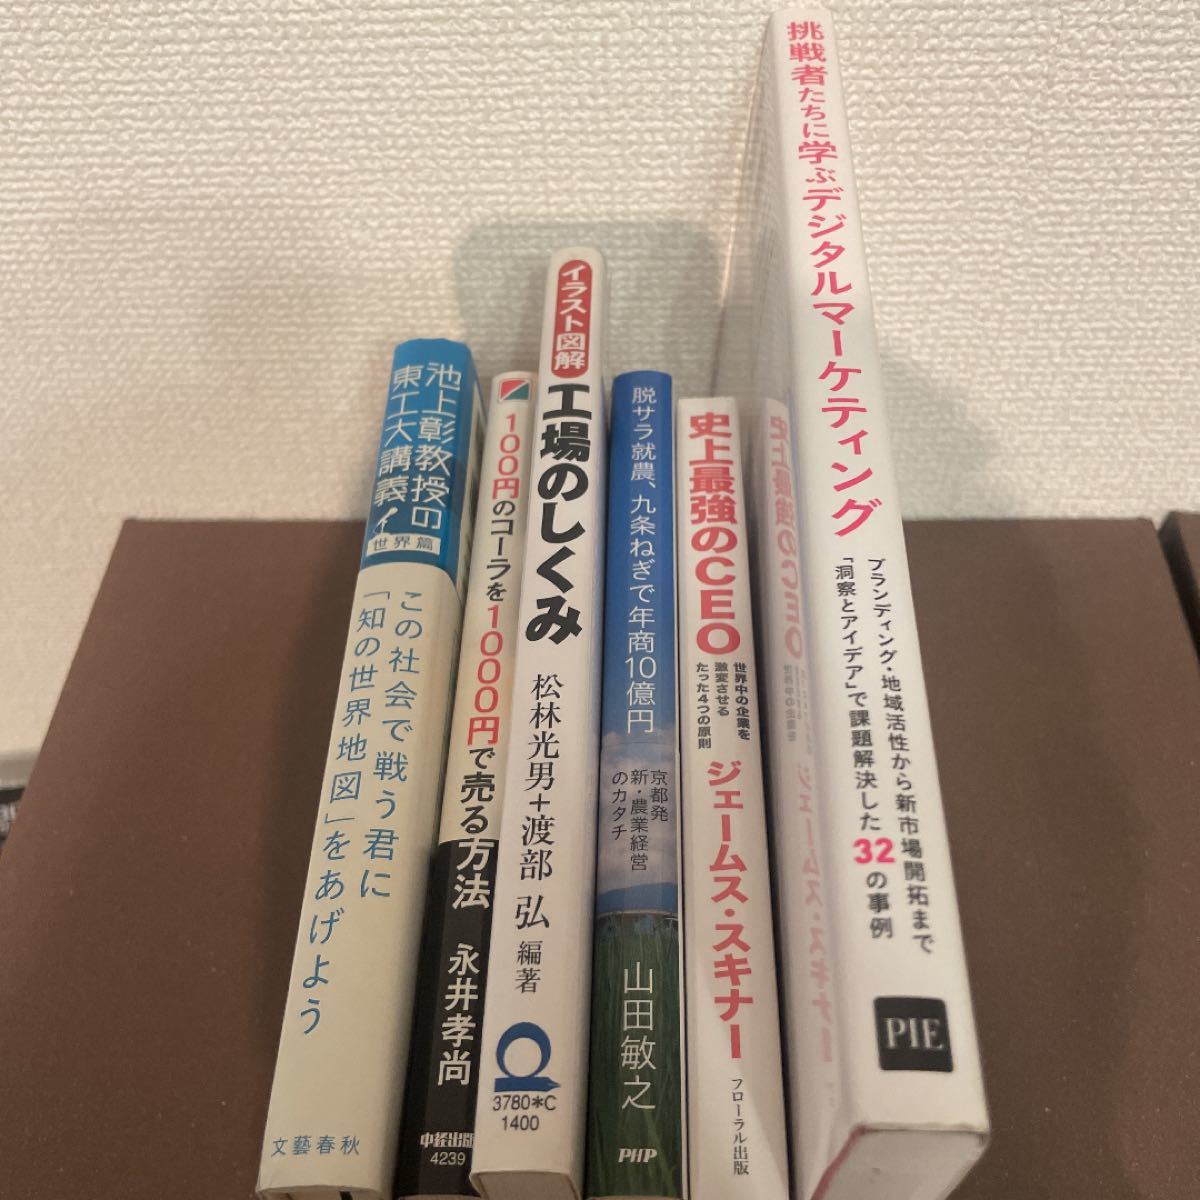 経済・経営書籍 6冊セット 【送料無料】